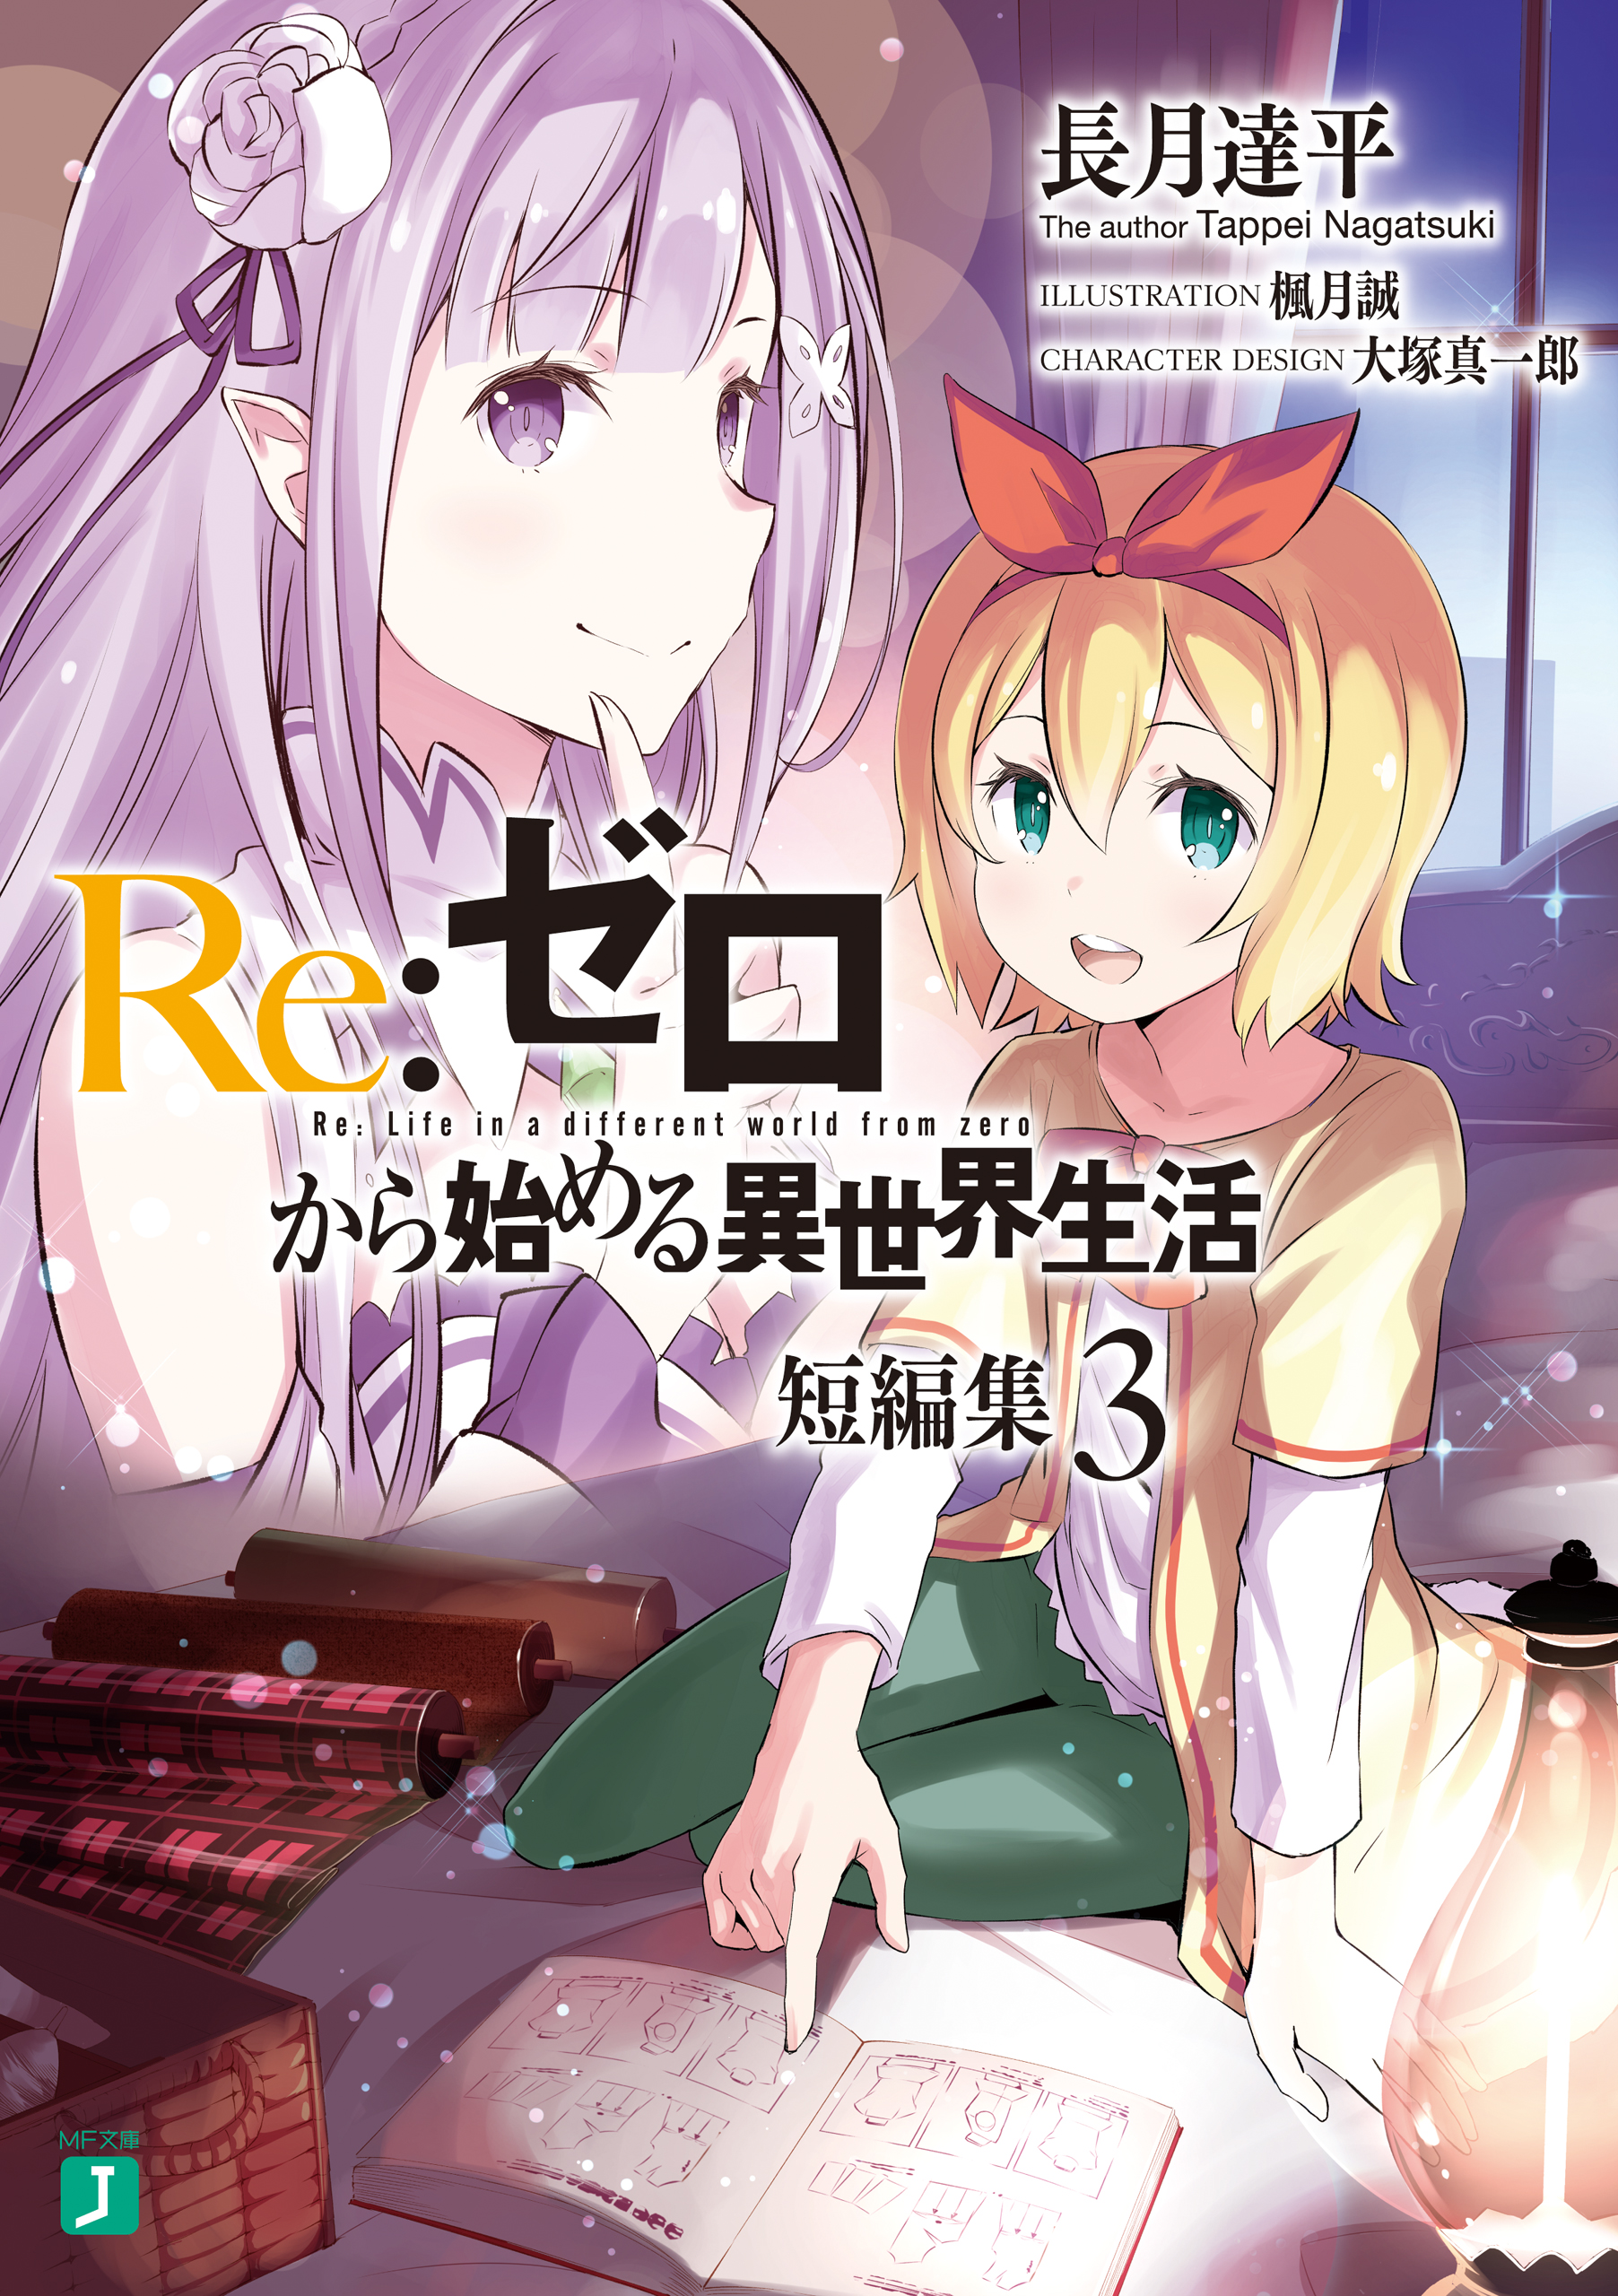 Re:Zero Light Novel Volume 3  Anime, Light novel, Awesome anime